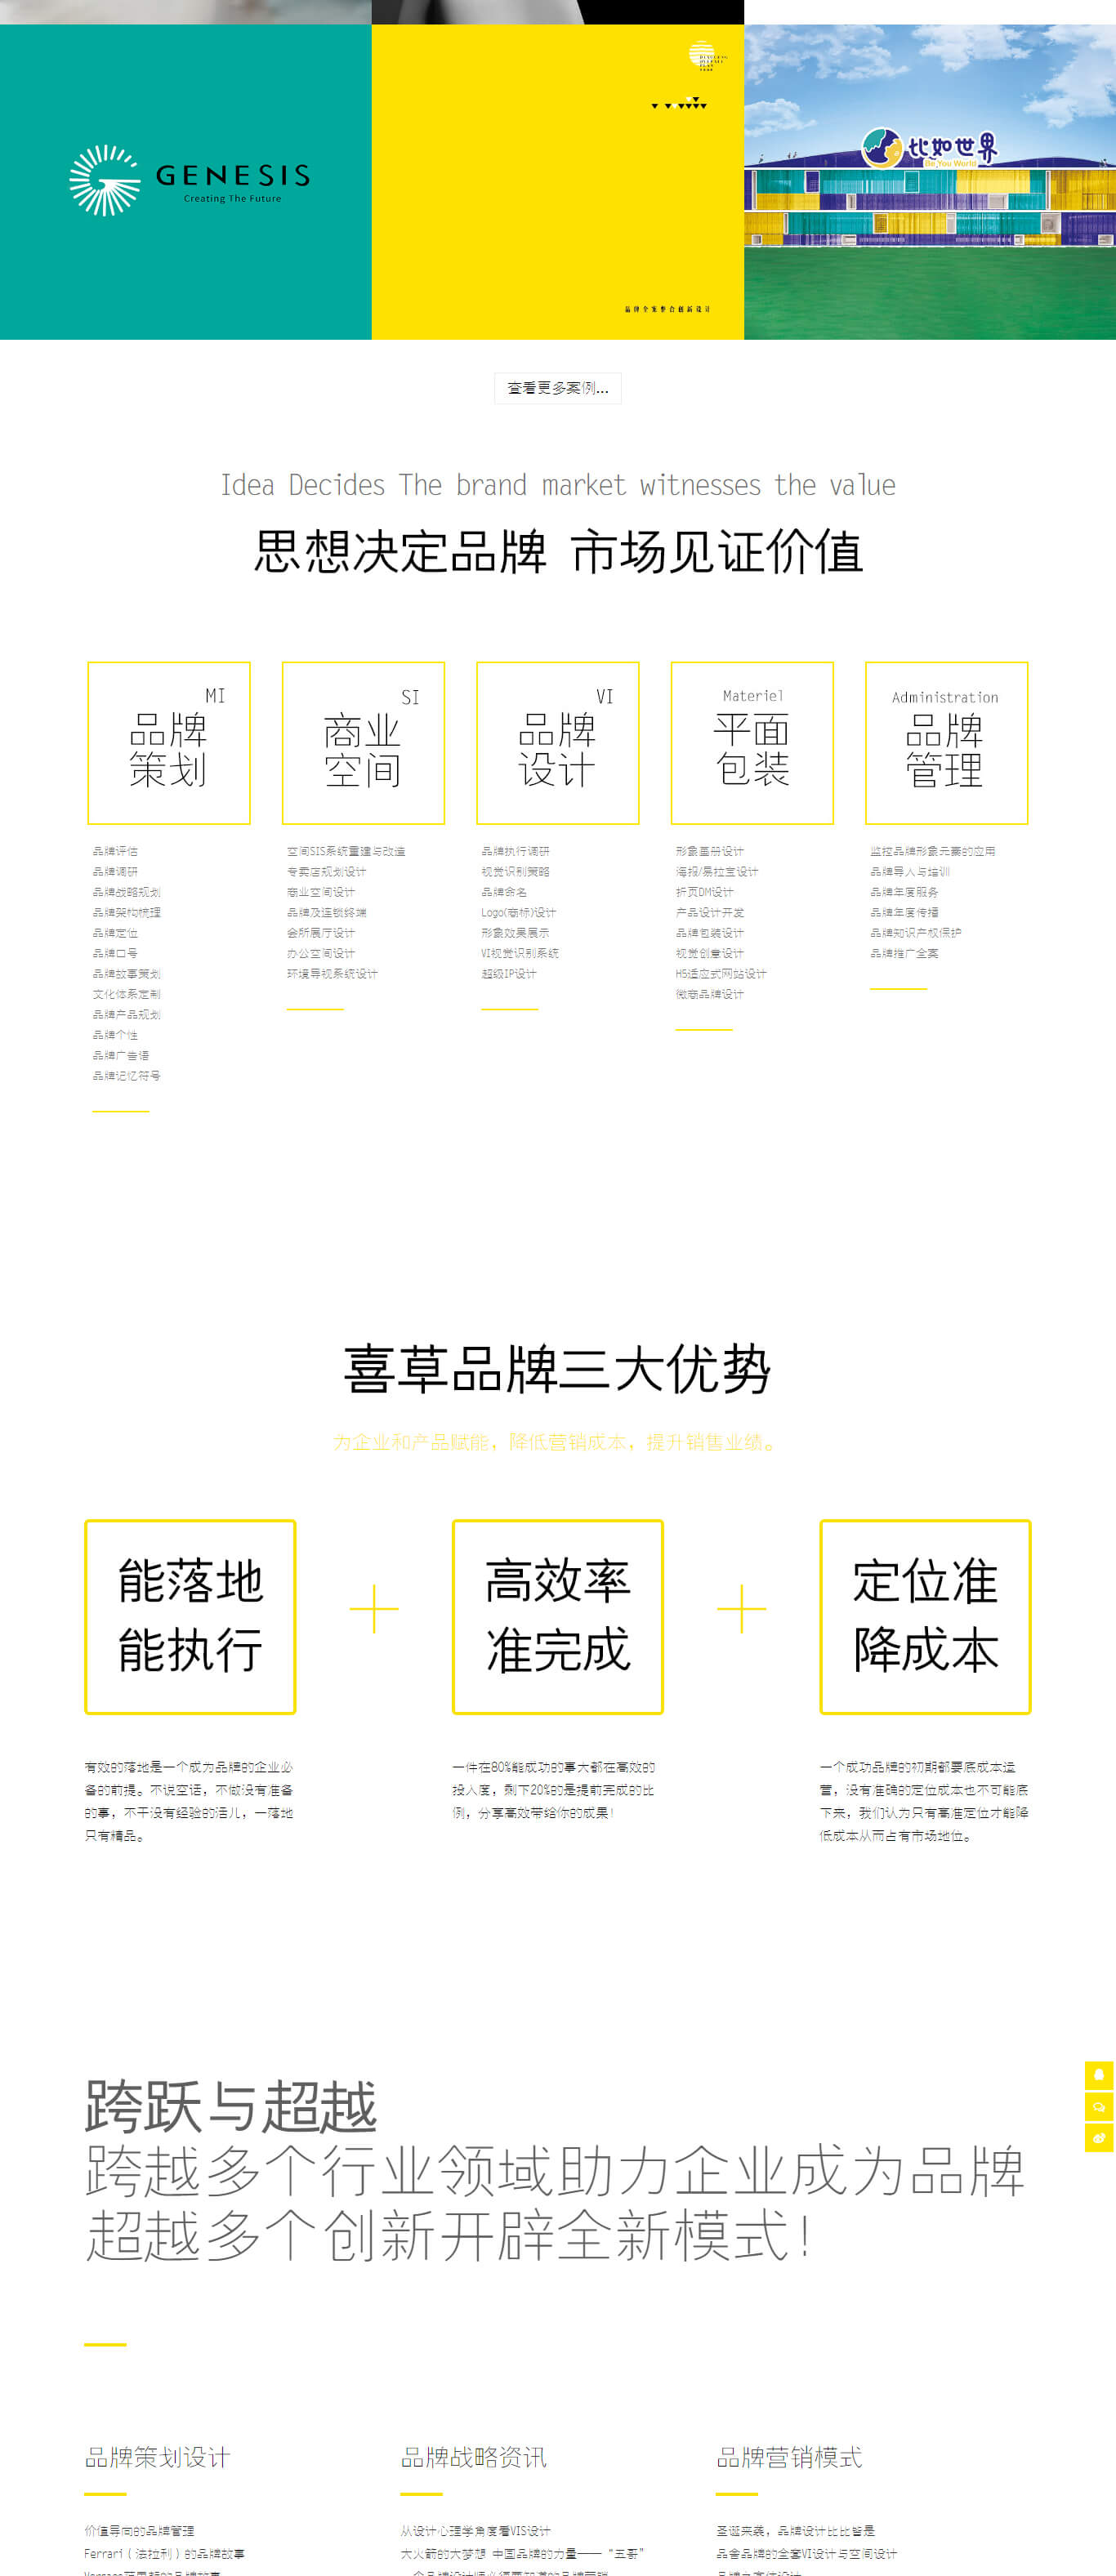 深圳喜草品牌创意设计有限公司(图2)